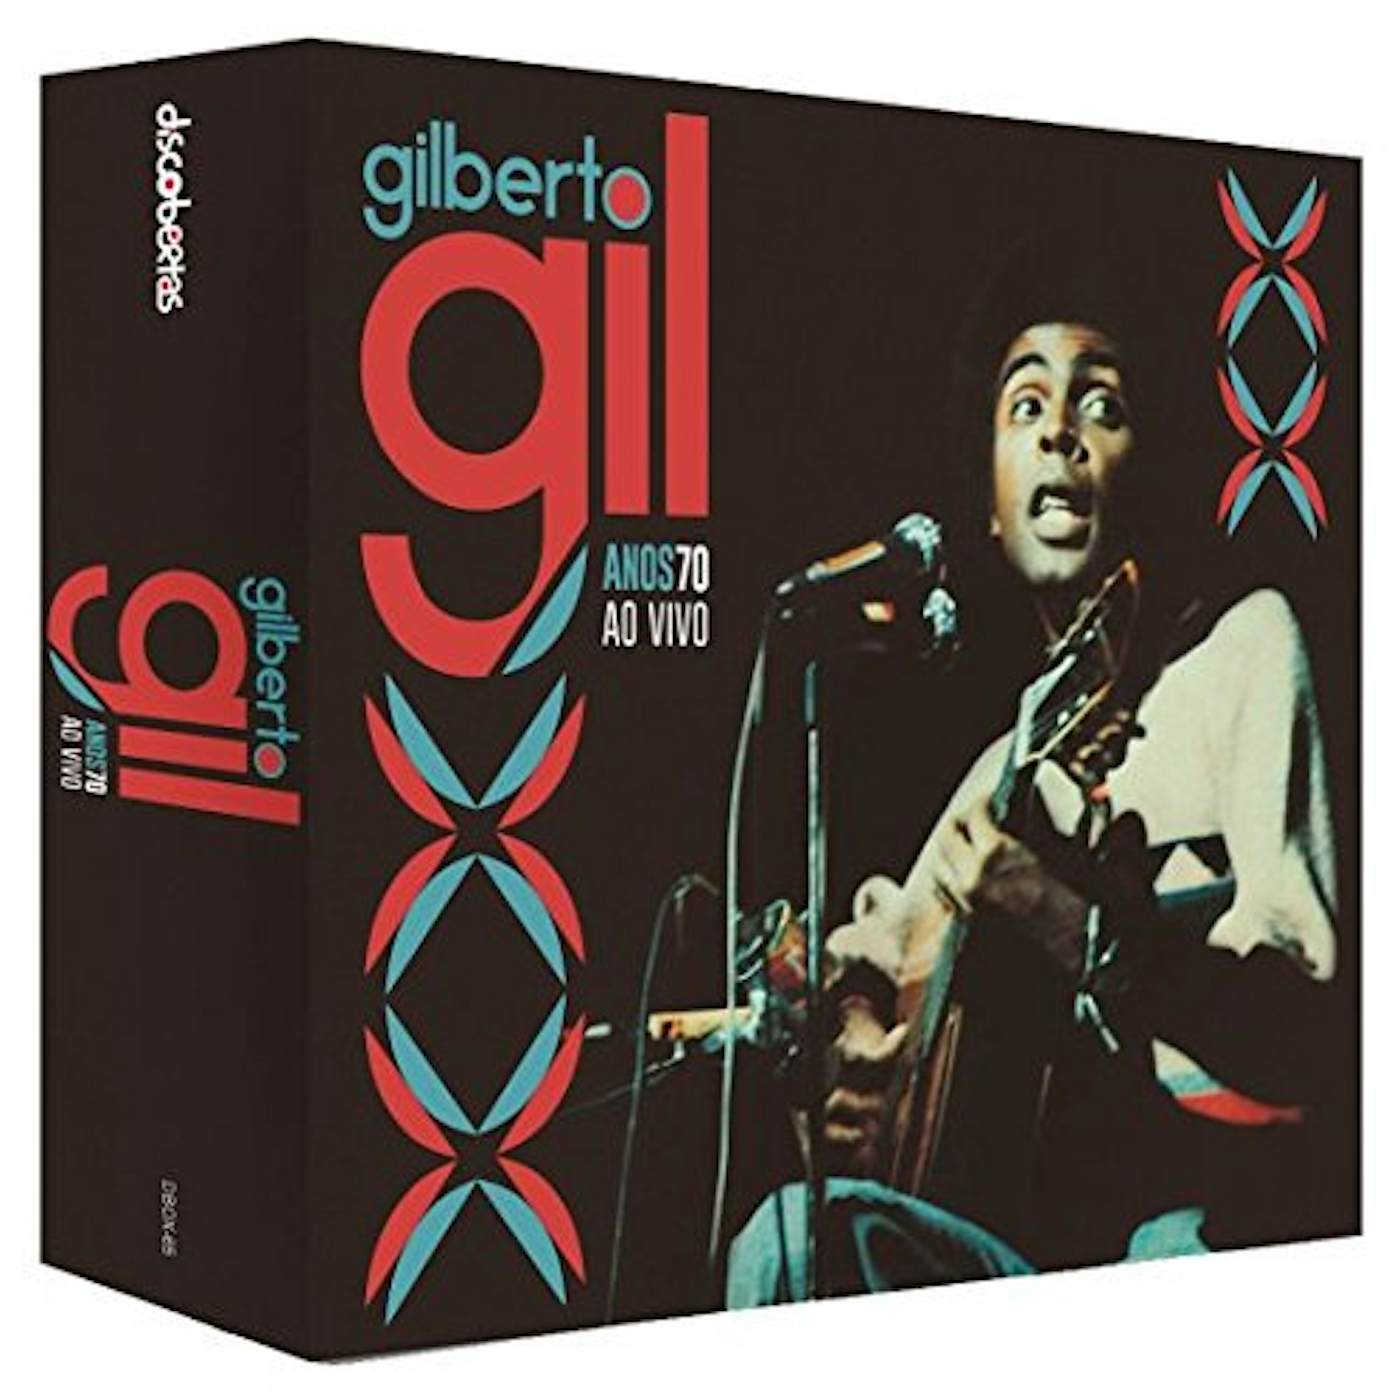 Gilberto Gil ANOS 70 AO VIVO BOX CD